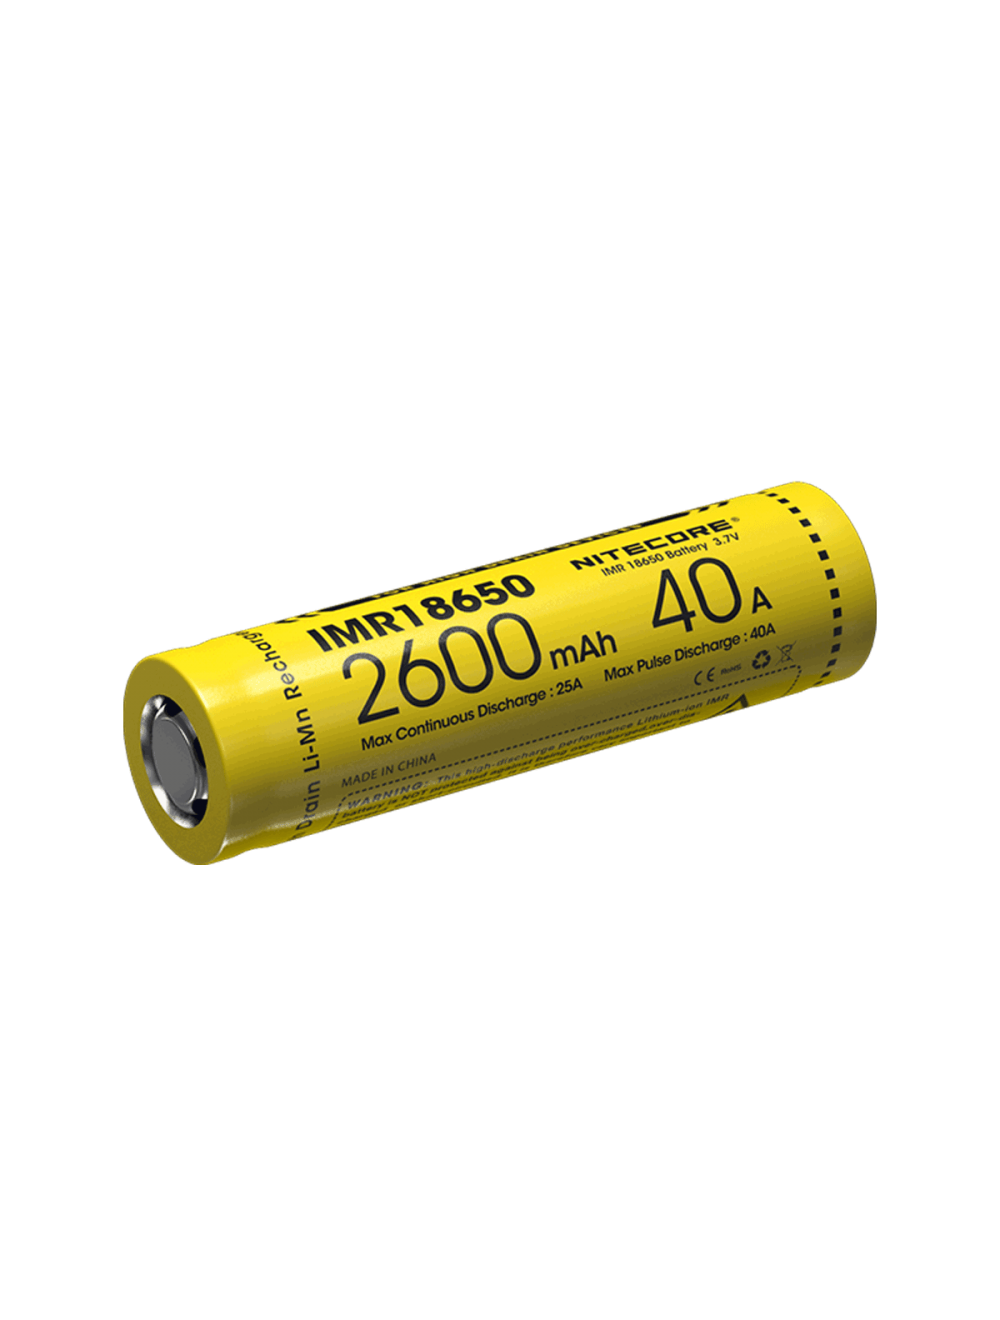 Zoeken gebruiker films Nitecore IMR 18650 Oplaadbare batterij 2600mAh flat top kopen? Ledscherp.nl